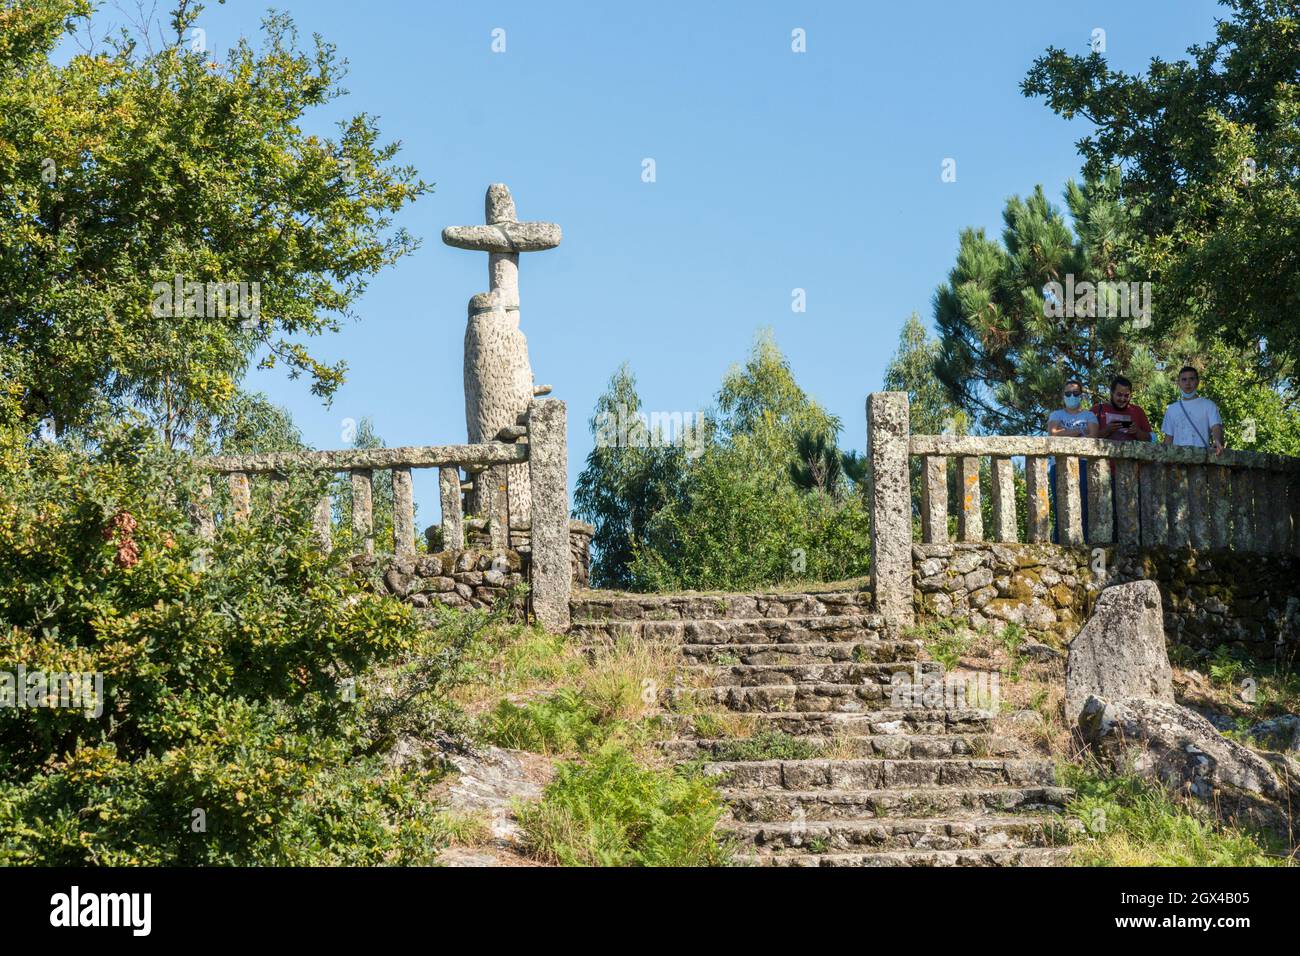 Croce di pietra fatta dallo scultore modernista Francisco Pazos sulla cima di una montagna vicino a Meaño, Galizia, Spagna. Foto Stock